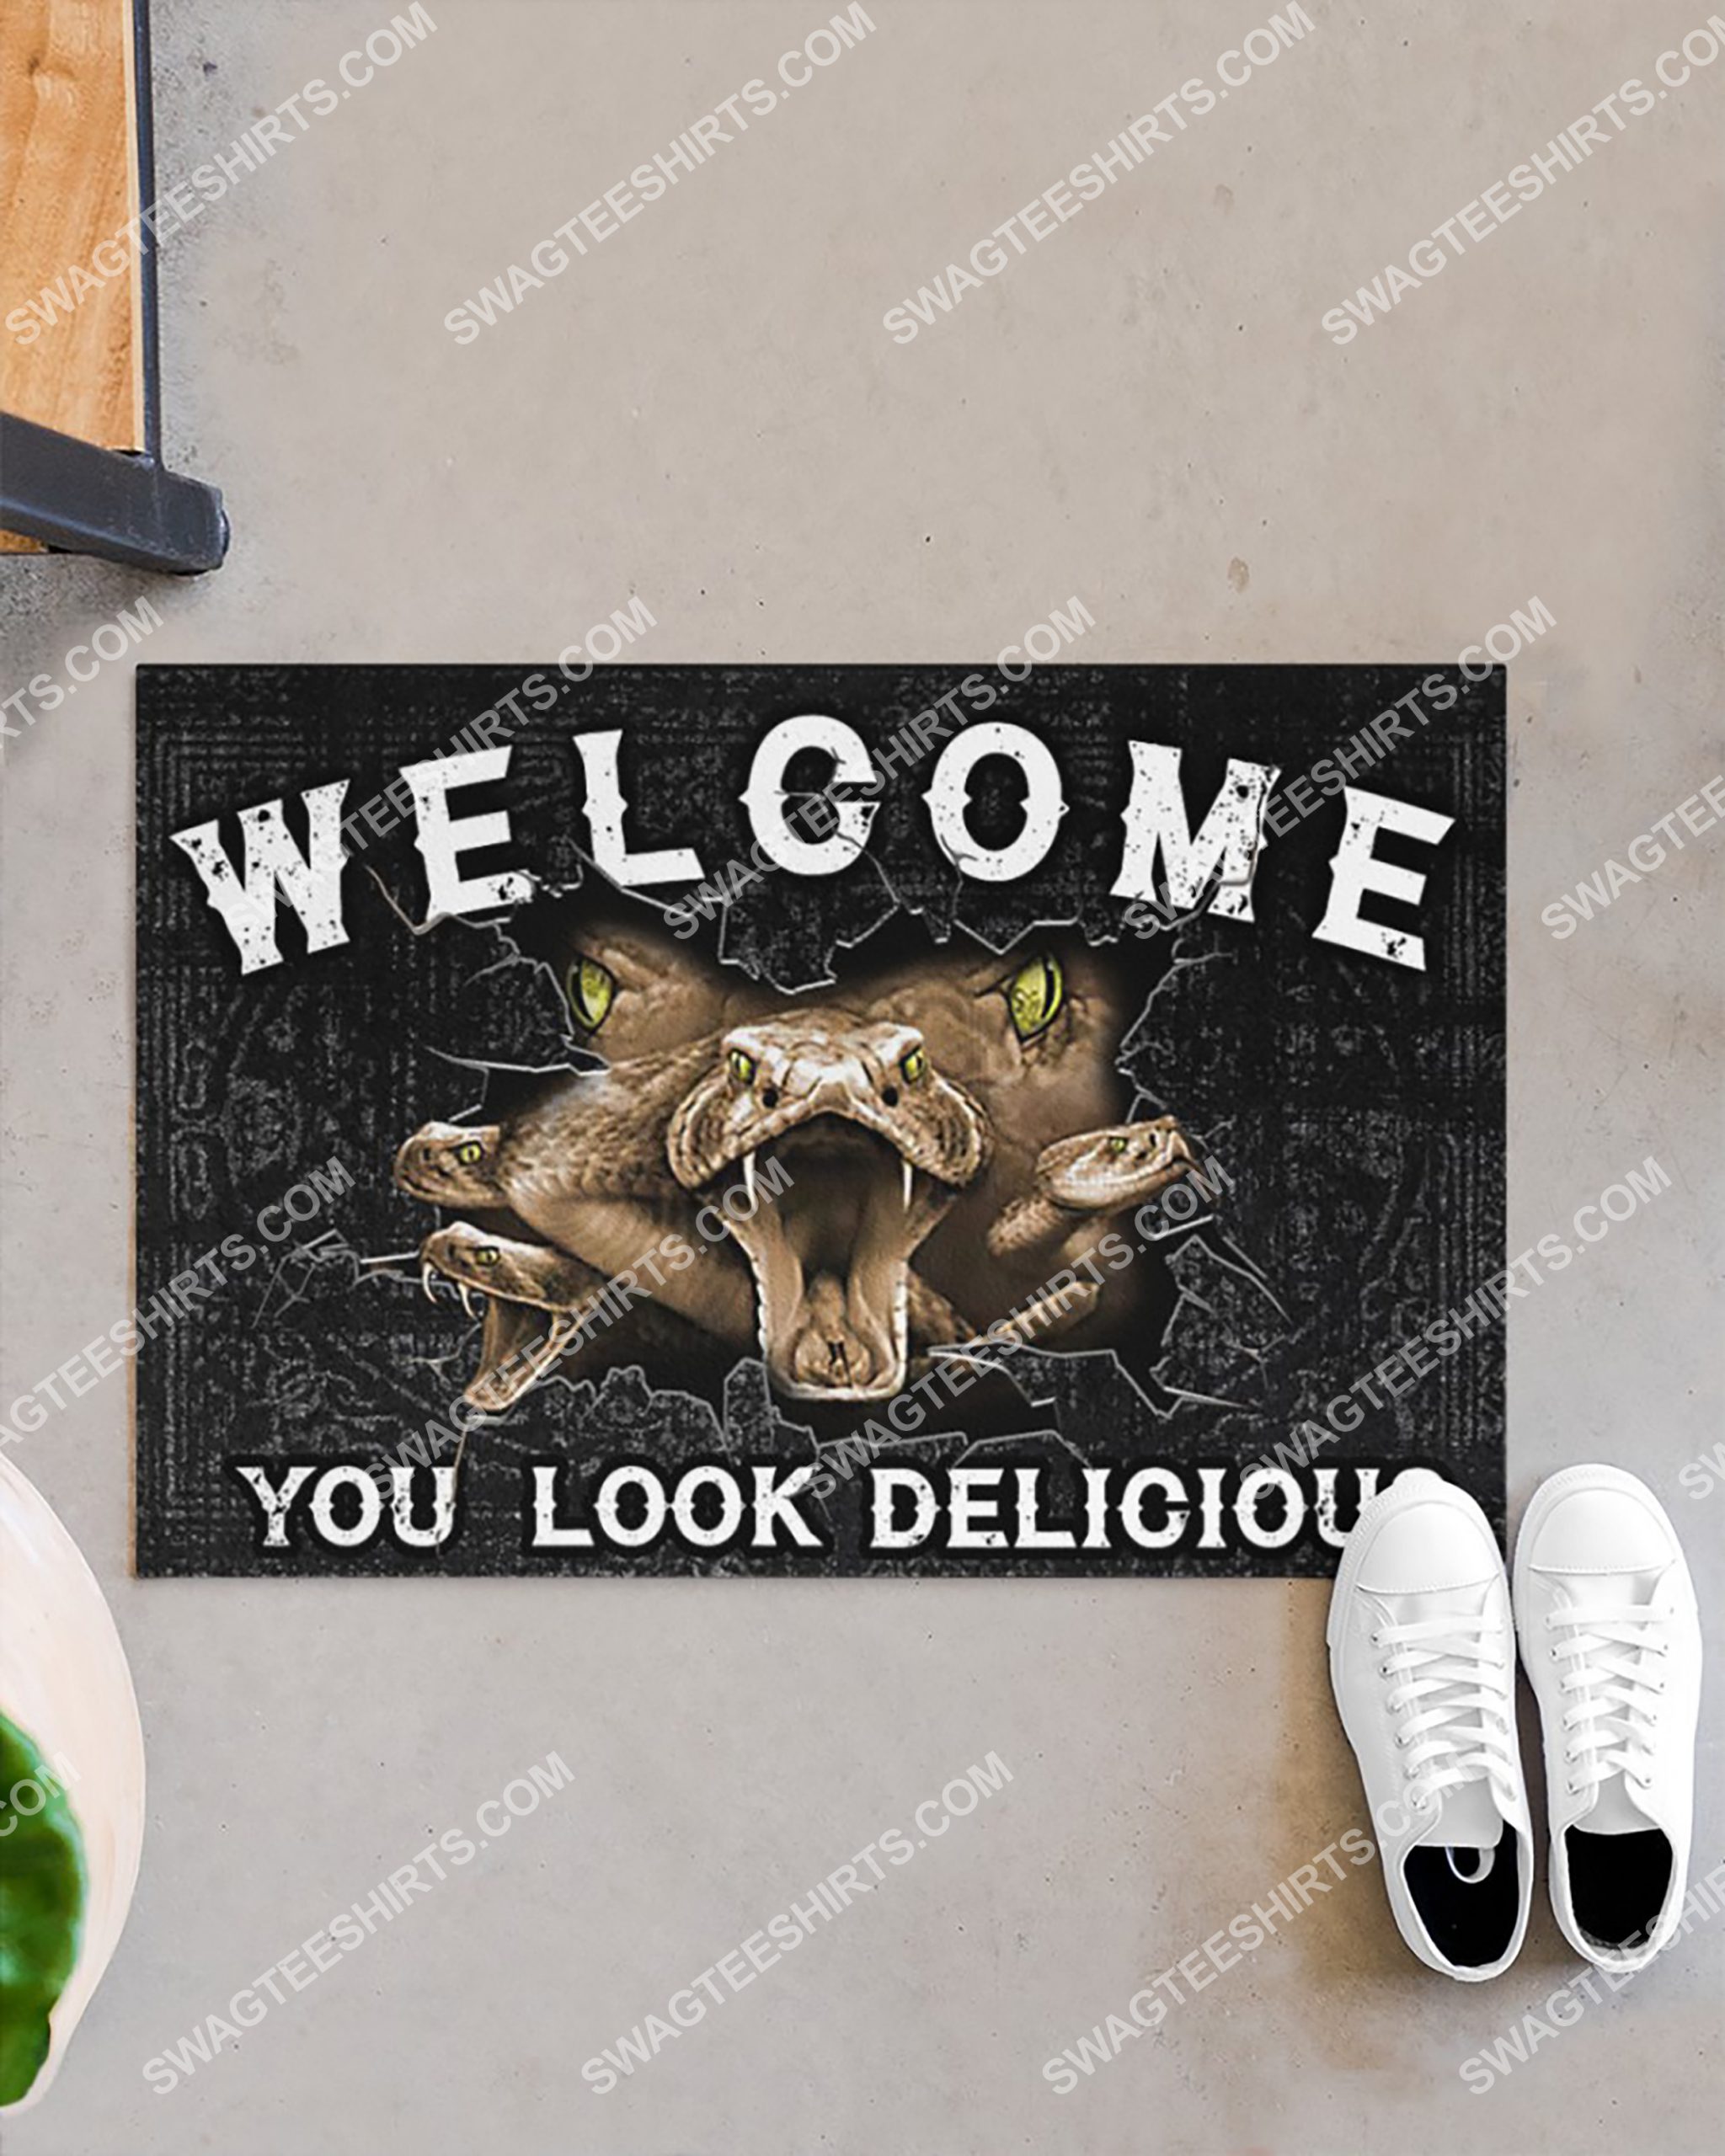 snack welcome you look delicious doormat 3(1)